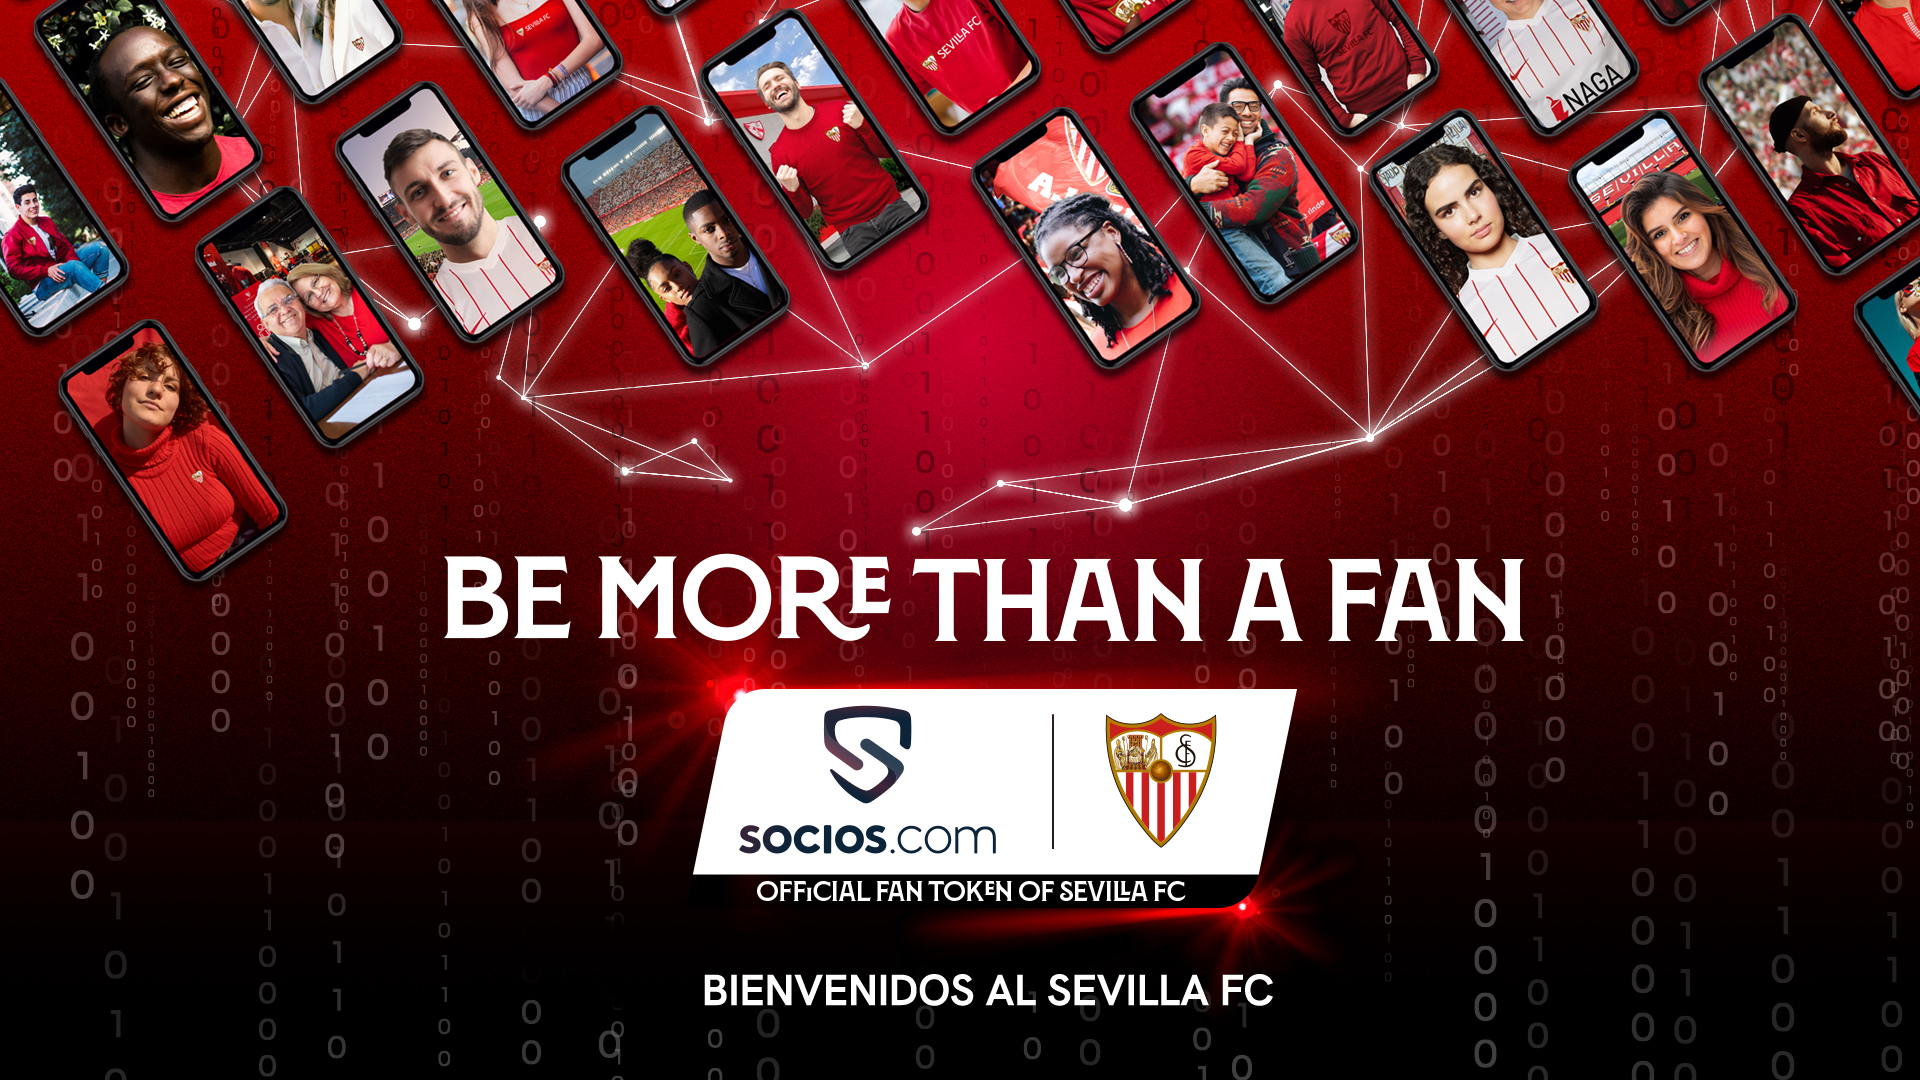 Acuerdo entre el Sevilla FC y Socios.com